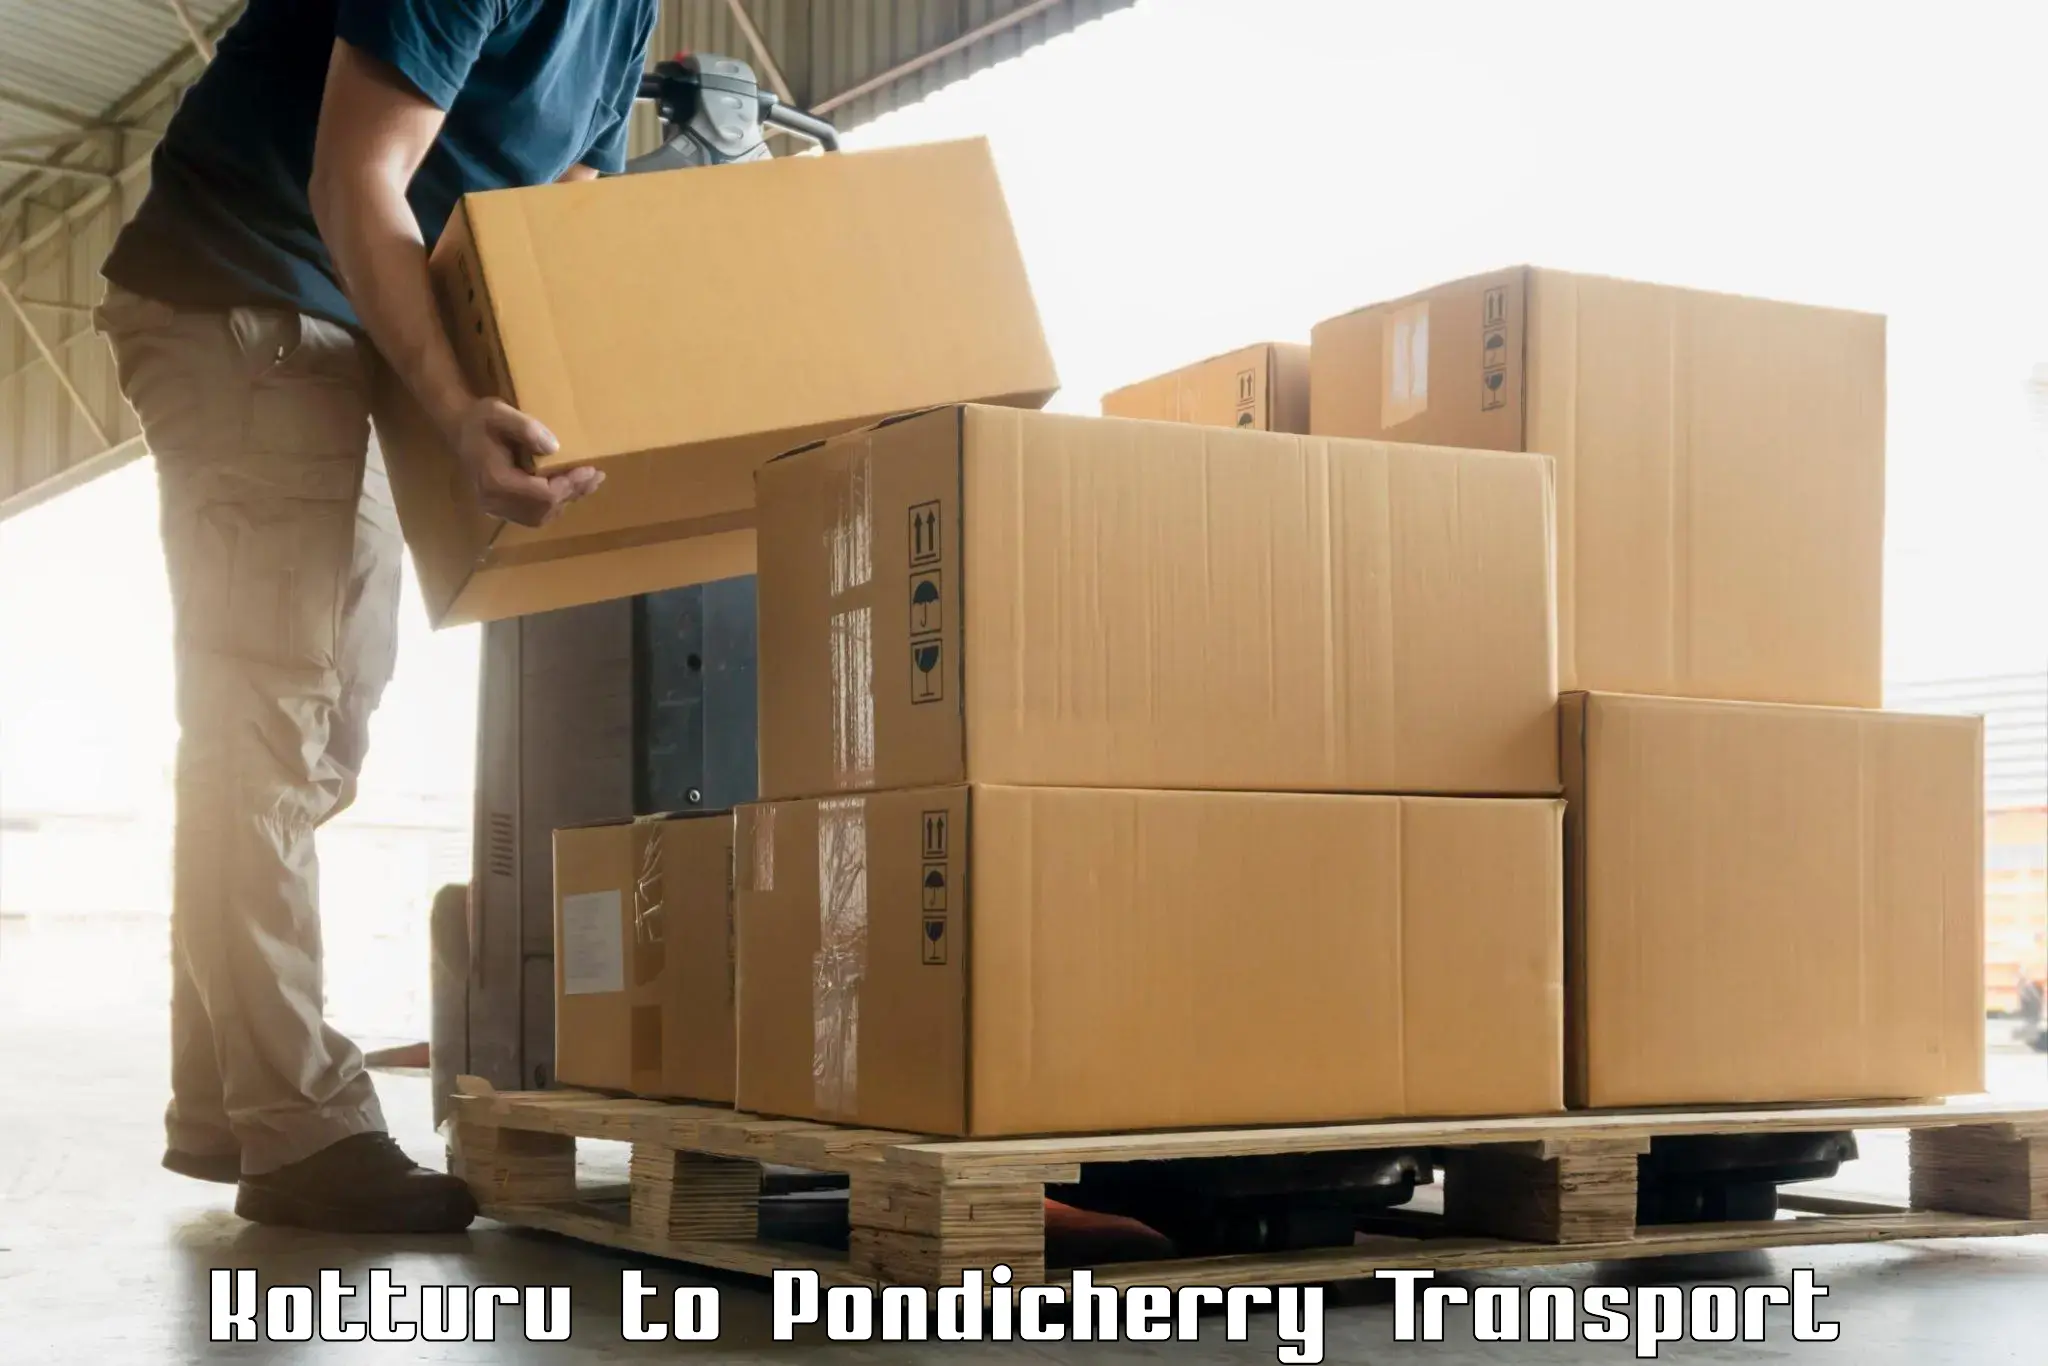 Parcel transport services Kotturu to Pondicherry